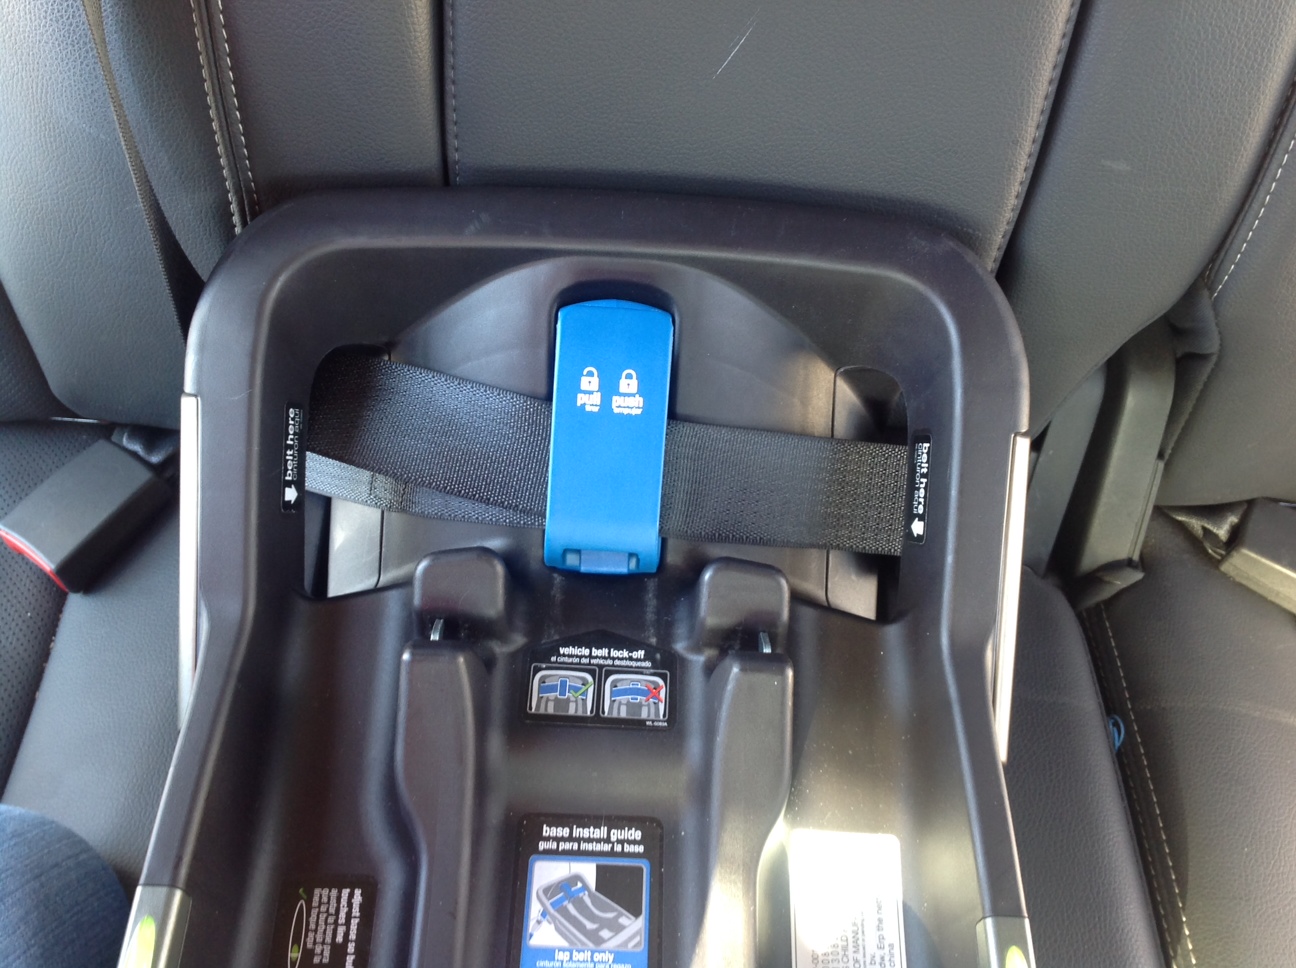 nuna car seat latch guides